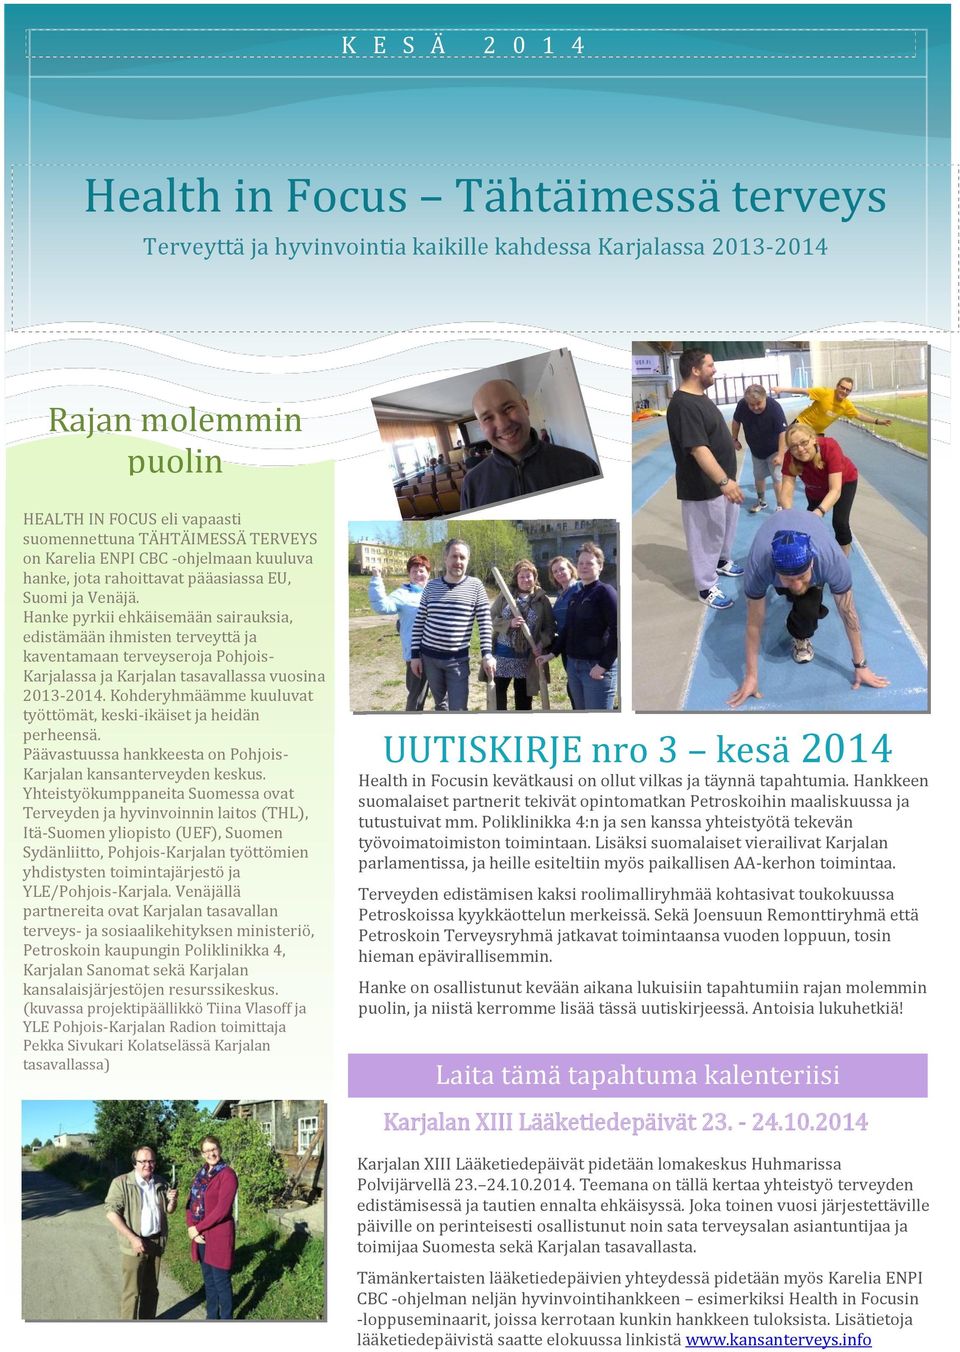 Hanke pyrkii ehkäisemään sairauksia, edistämään ihmisten terveyttä ja kaventamaan terveyseroja Pohjois- Karjalassa ja Karjalan tasavallassa vuosina 2013-2014.